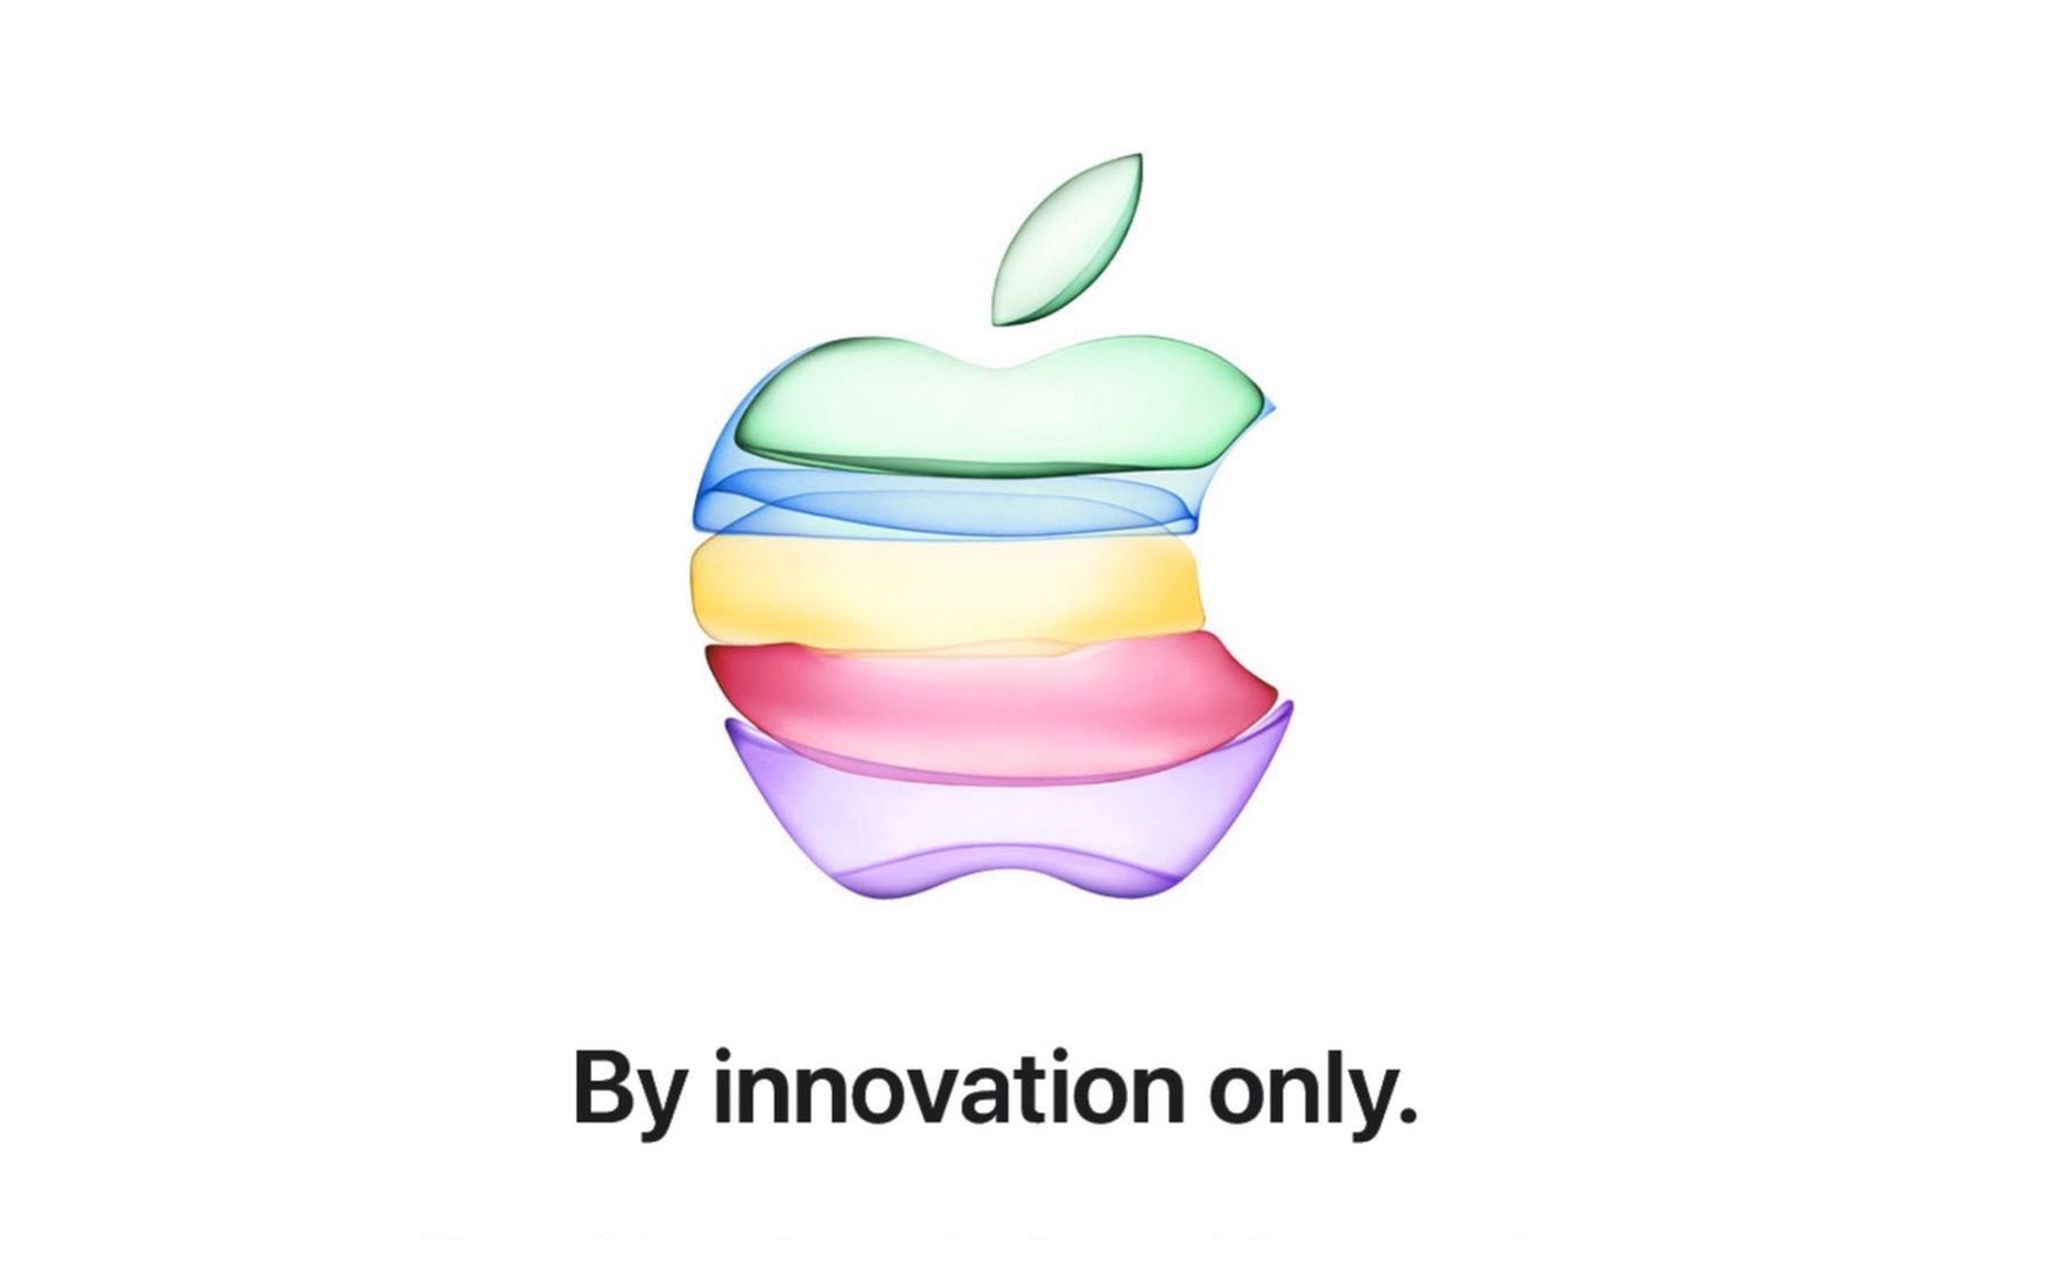 Chính thức: sự kiện ra mắt iPhone mới sẽ diễn ra vào 10/9 tại Apple Park